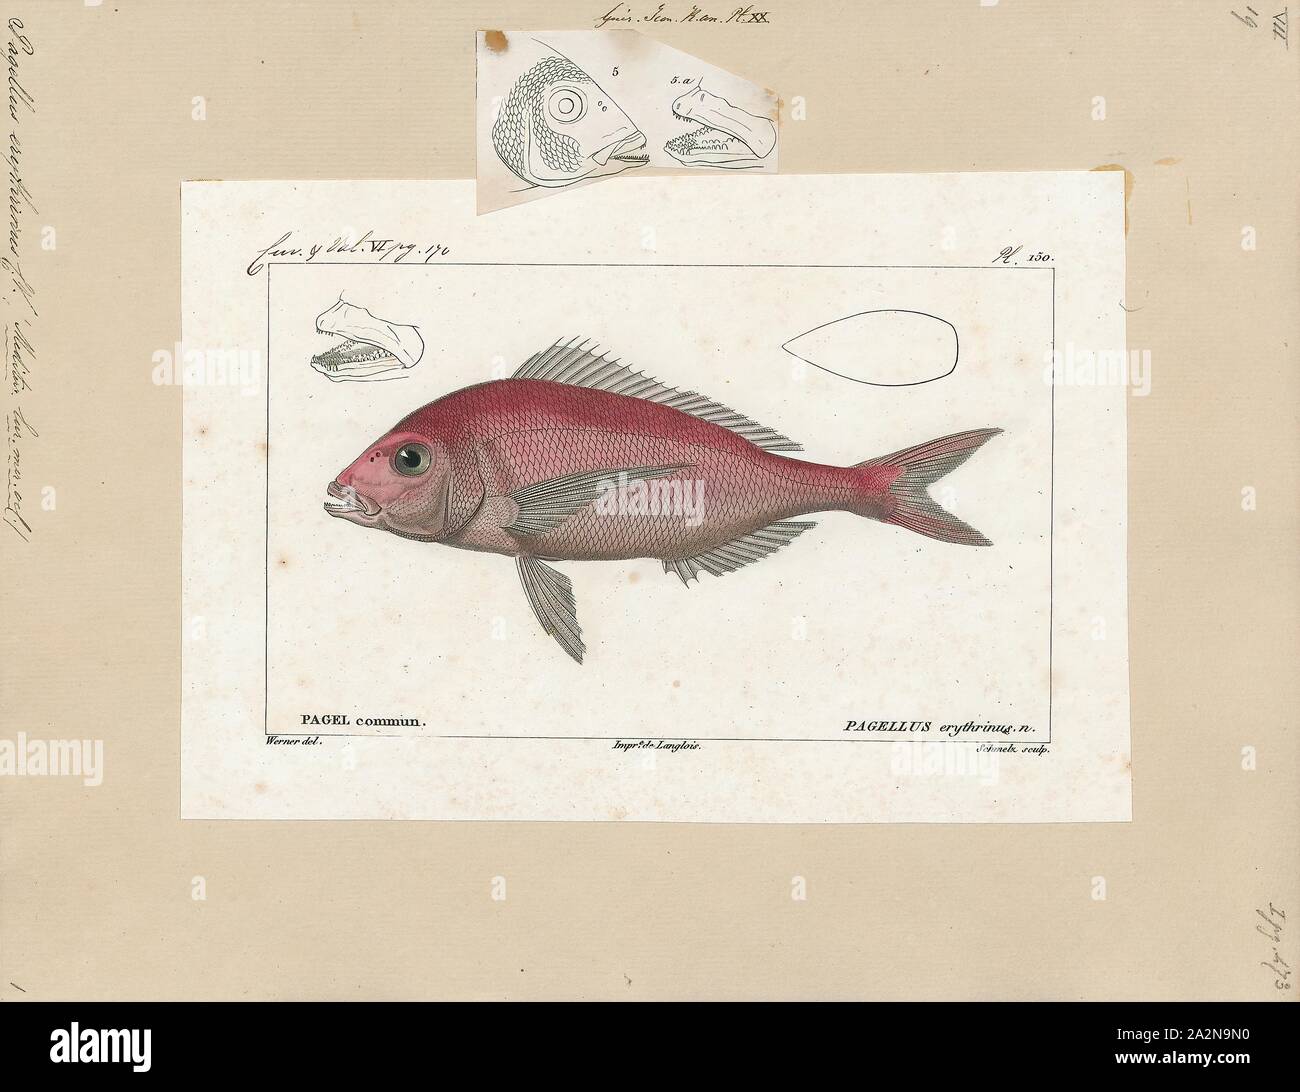 Pagellus erythrinus, Drucken, die gemeinsame Pandora (Pagellus erythrinus) ist ein Fisch aus der Familie der Meerbrassen (sparidae). Es ist ein beliebter Speisefisch in mediterranen Ländern, mit zarten weißen Fleisch., 1700-1880 Stockfoto